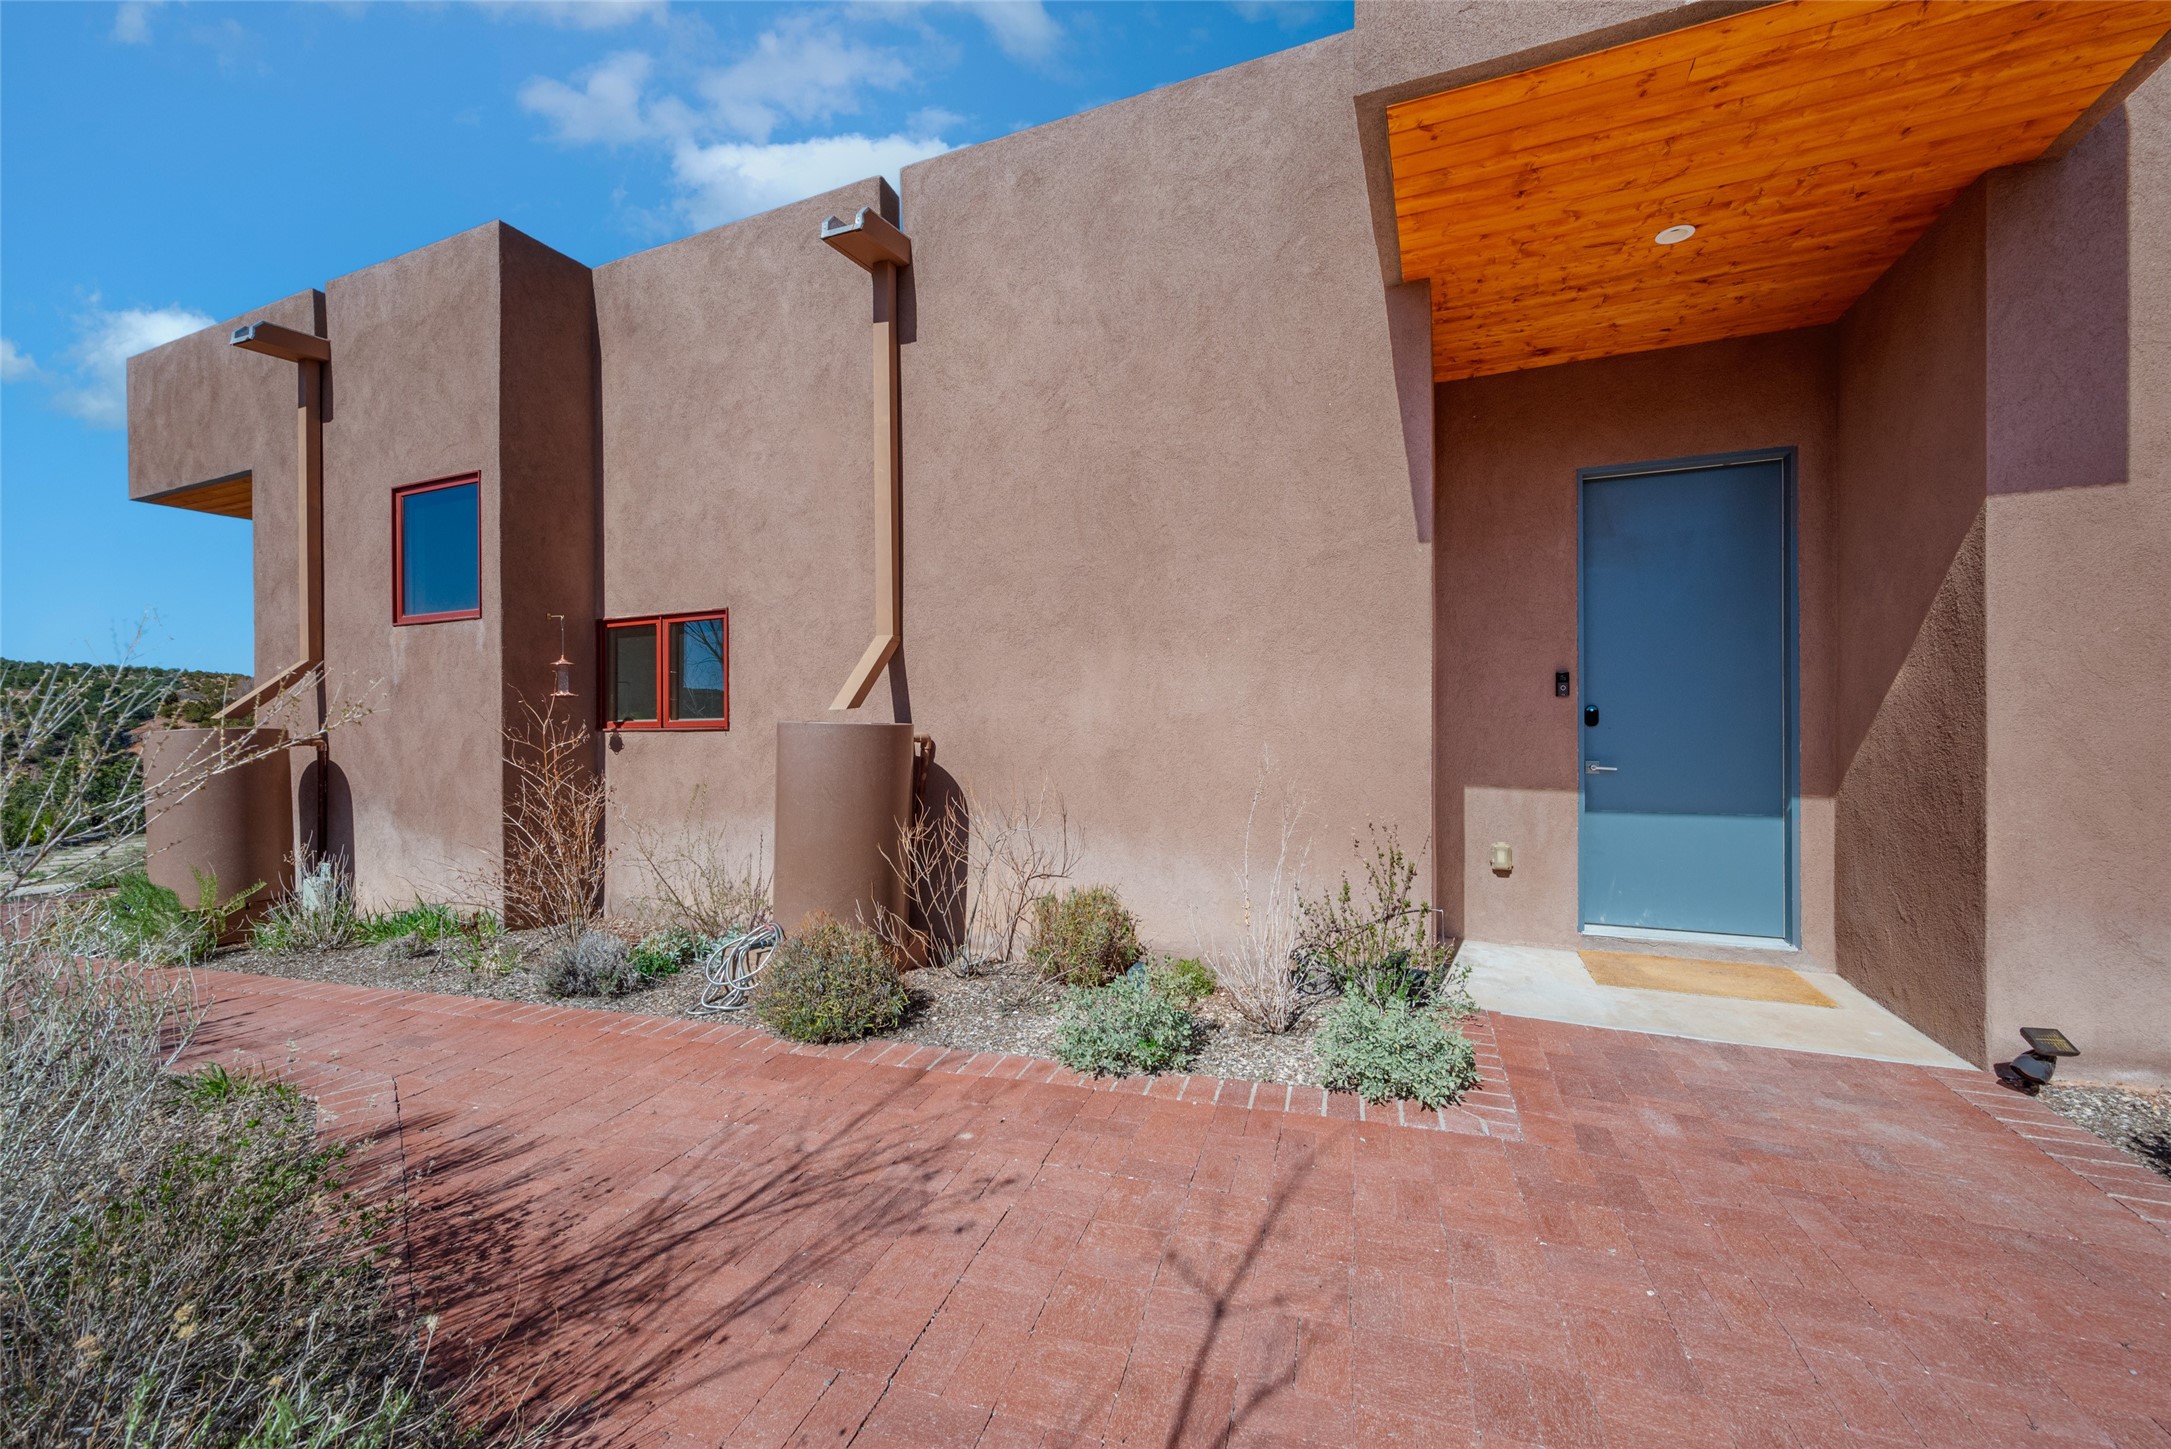 31 Camino Chupadero, Santa Fe, New Mexico 87506, 2 Bedrooms Bedrooms, ,2 BathroomsBathrooms,Residential,For Sale,31 Camino Chupadero,202401314